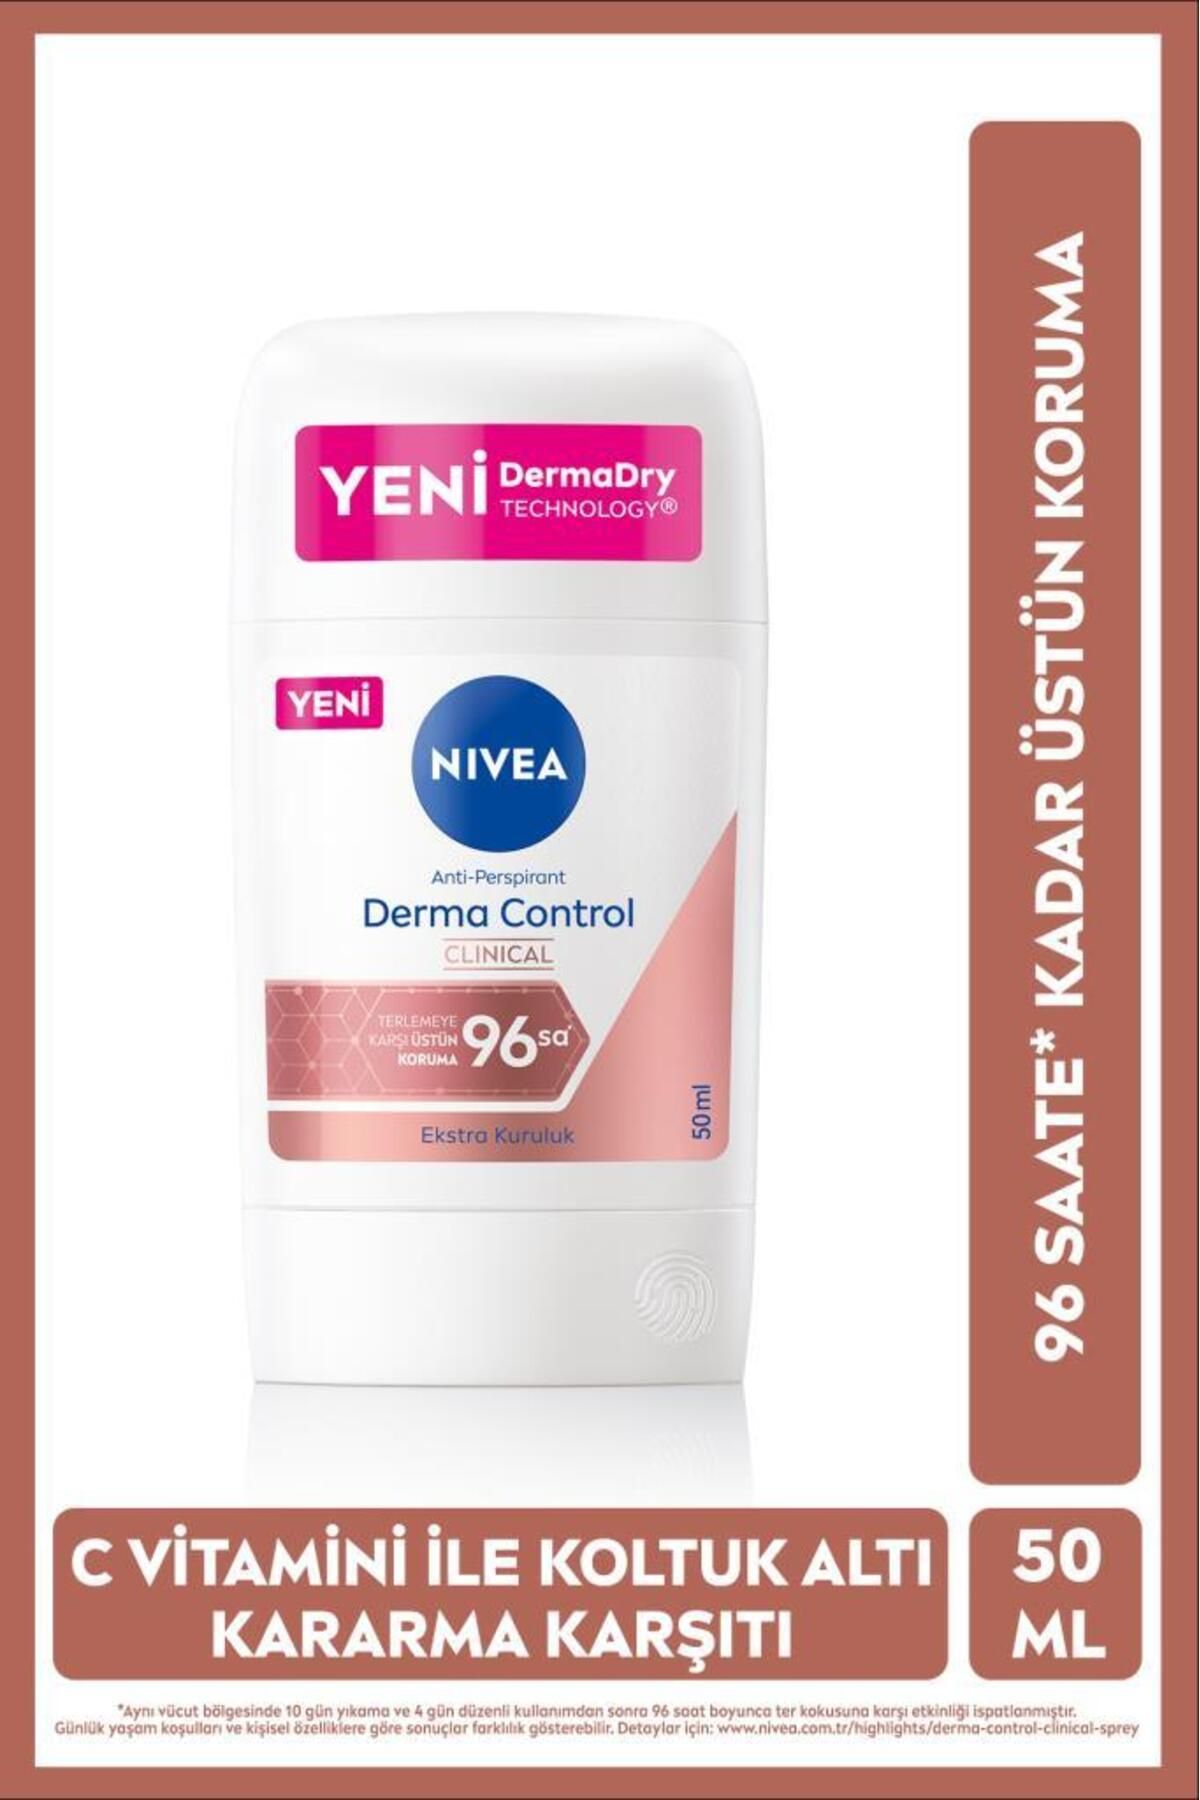 NIVEA Kadın Stick Deodorant Derma Control Clinical 50ml, C Vitamini Ile Koltuk Altı Kararma Karşıtı